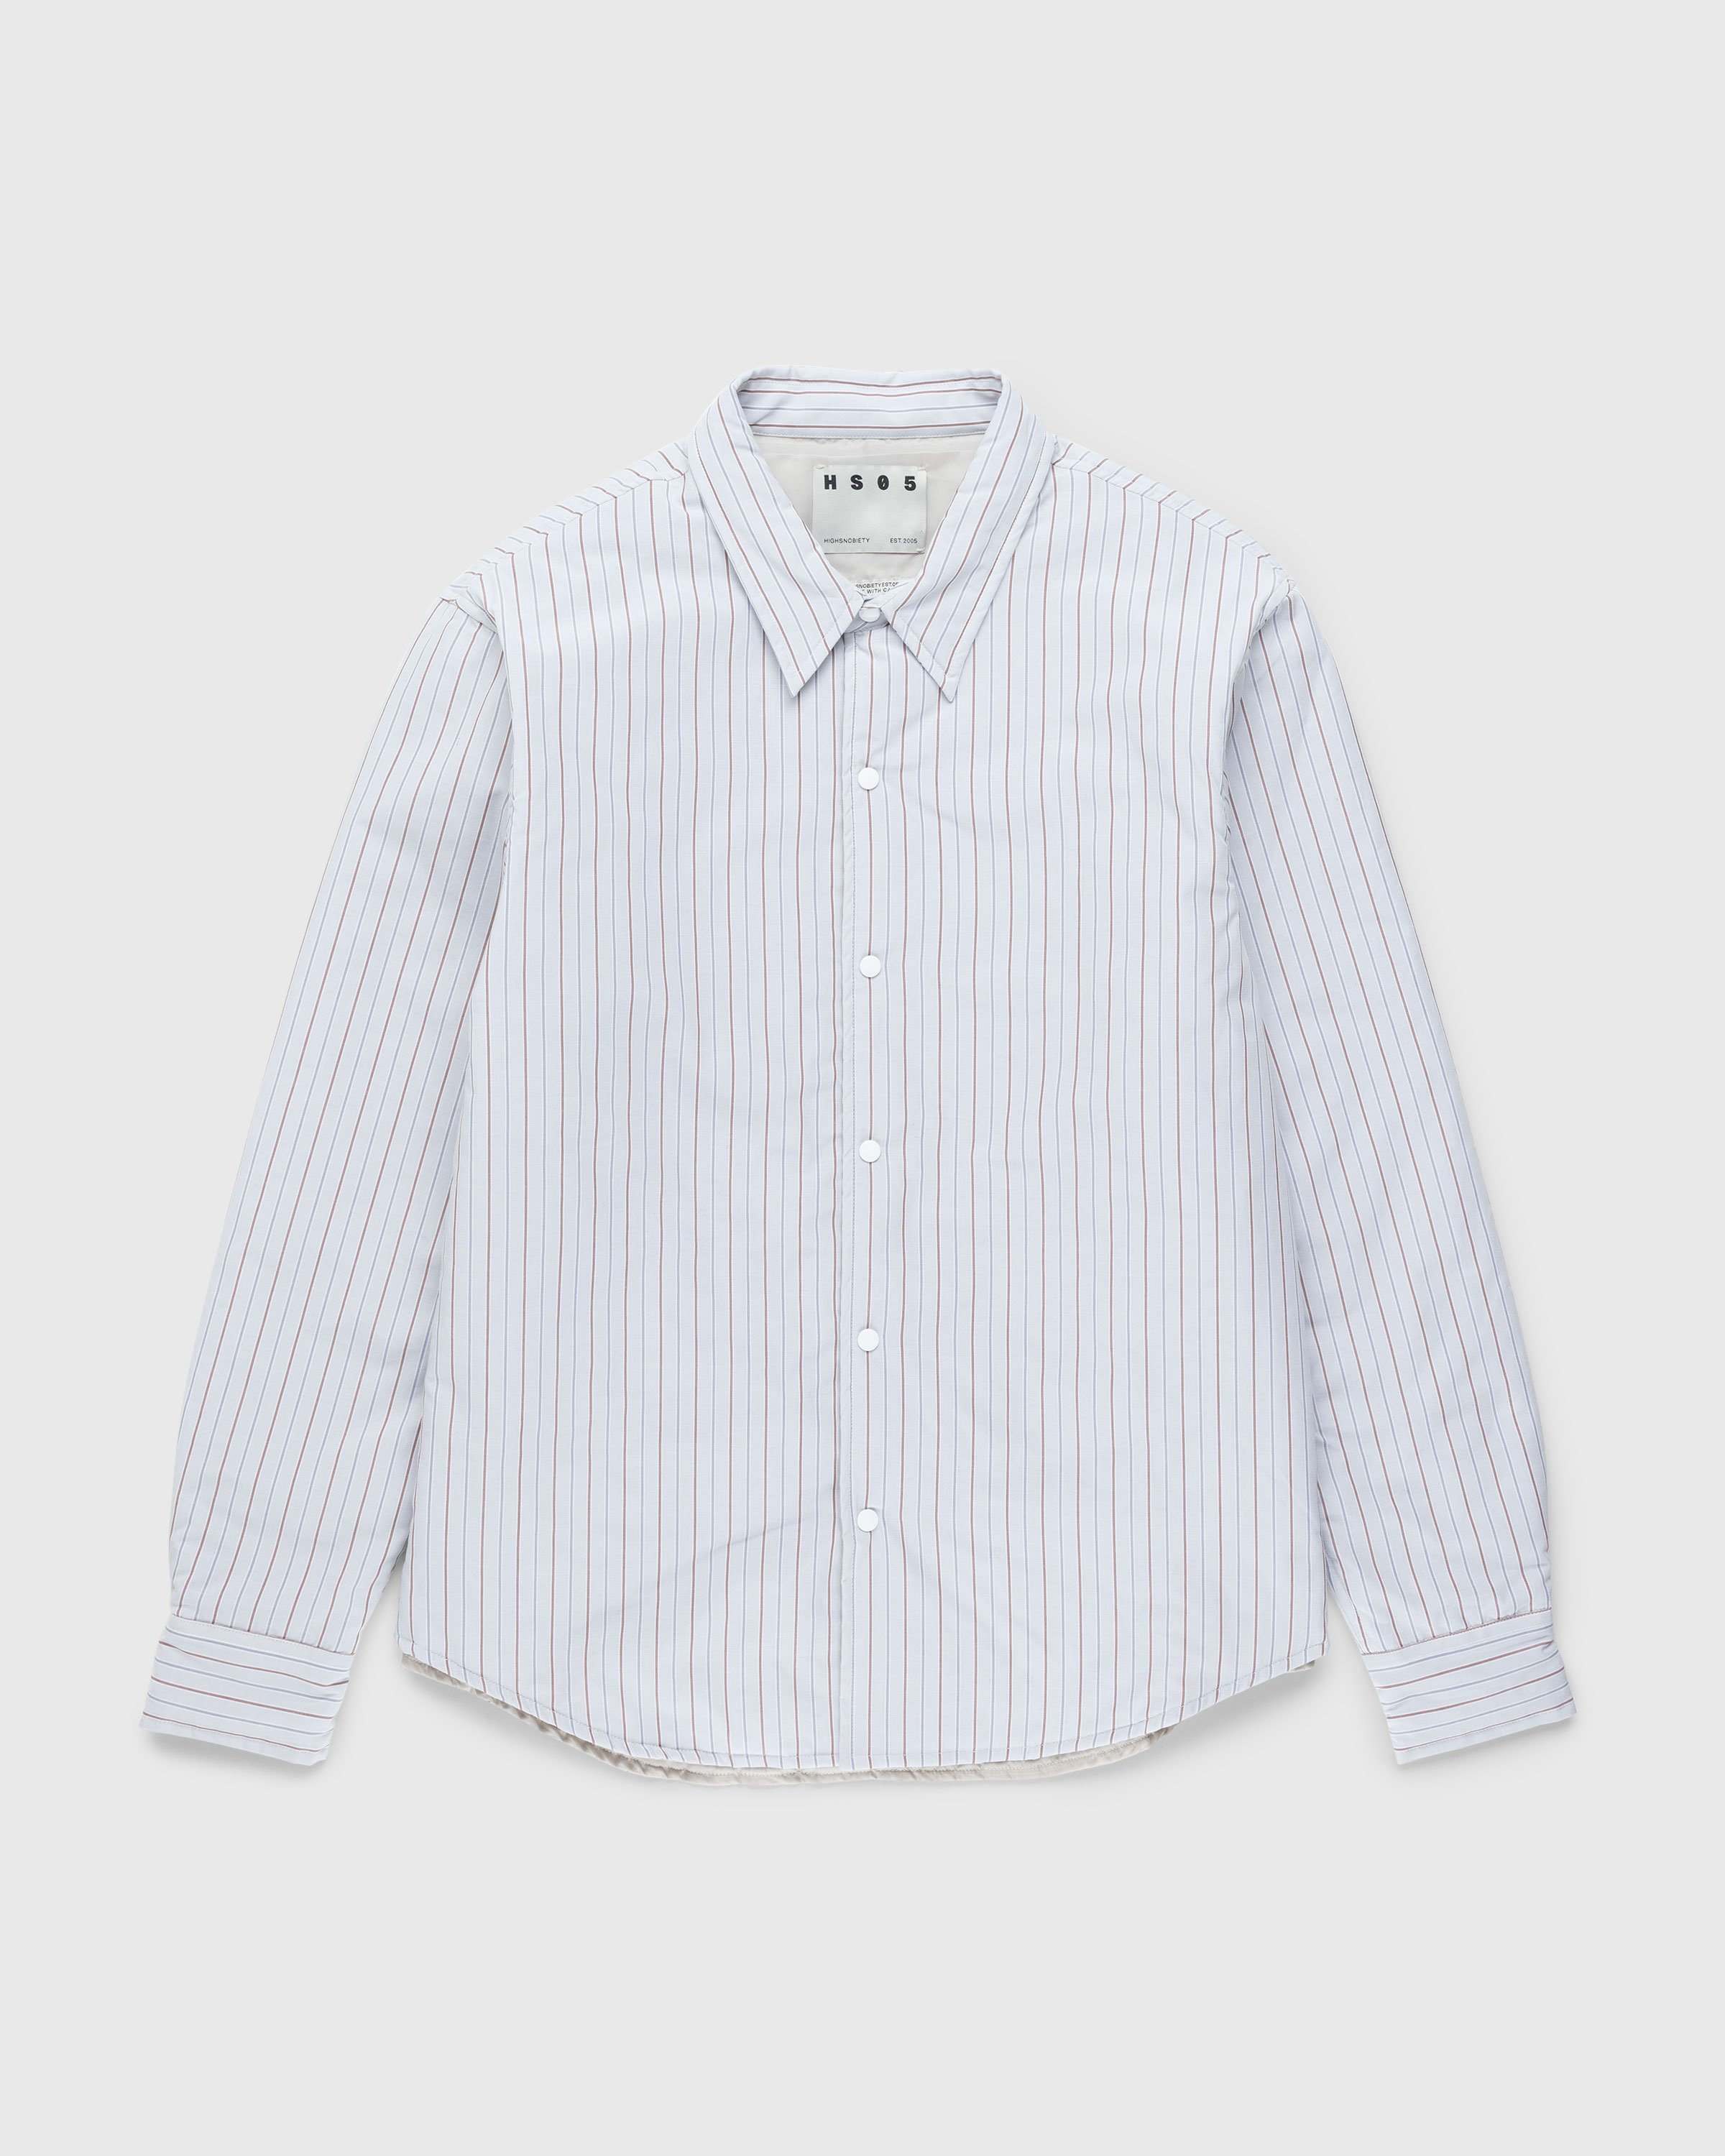 Highsnobiety HS05 - Insulated Shirt Jacket Stripes - Clothing - Beige - Image 1